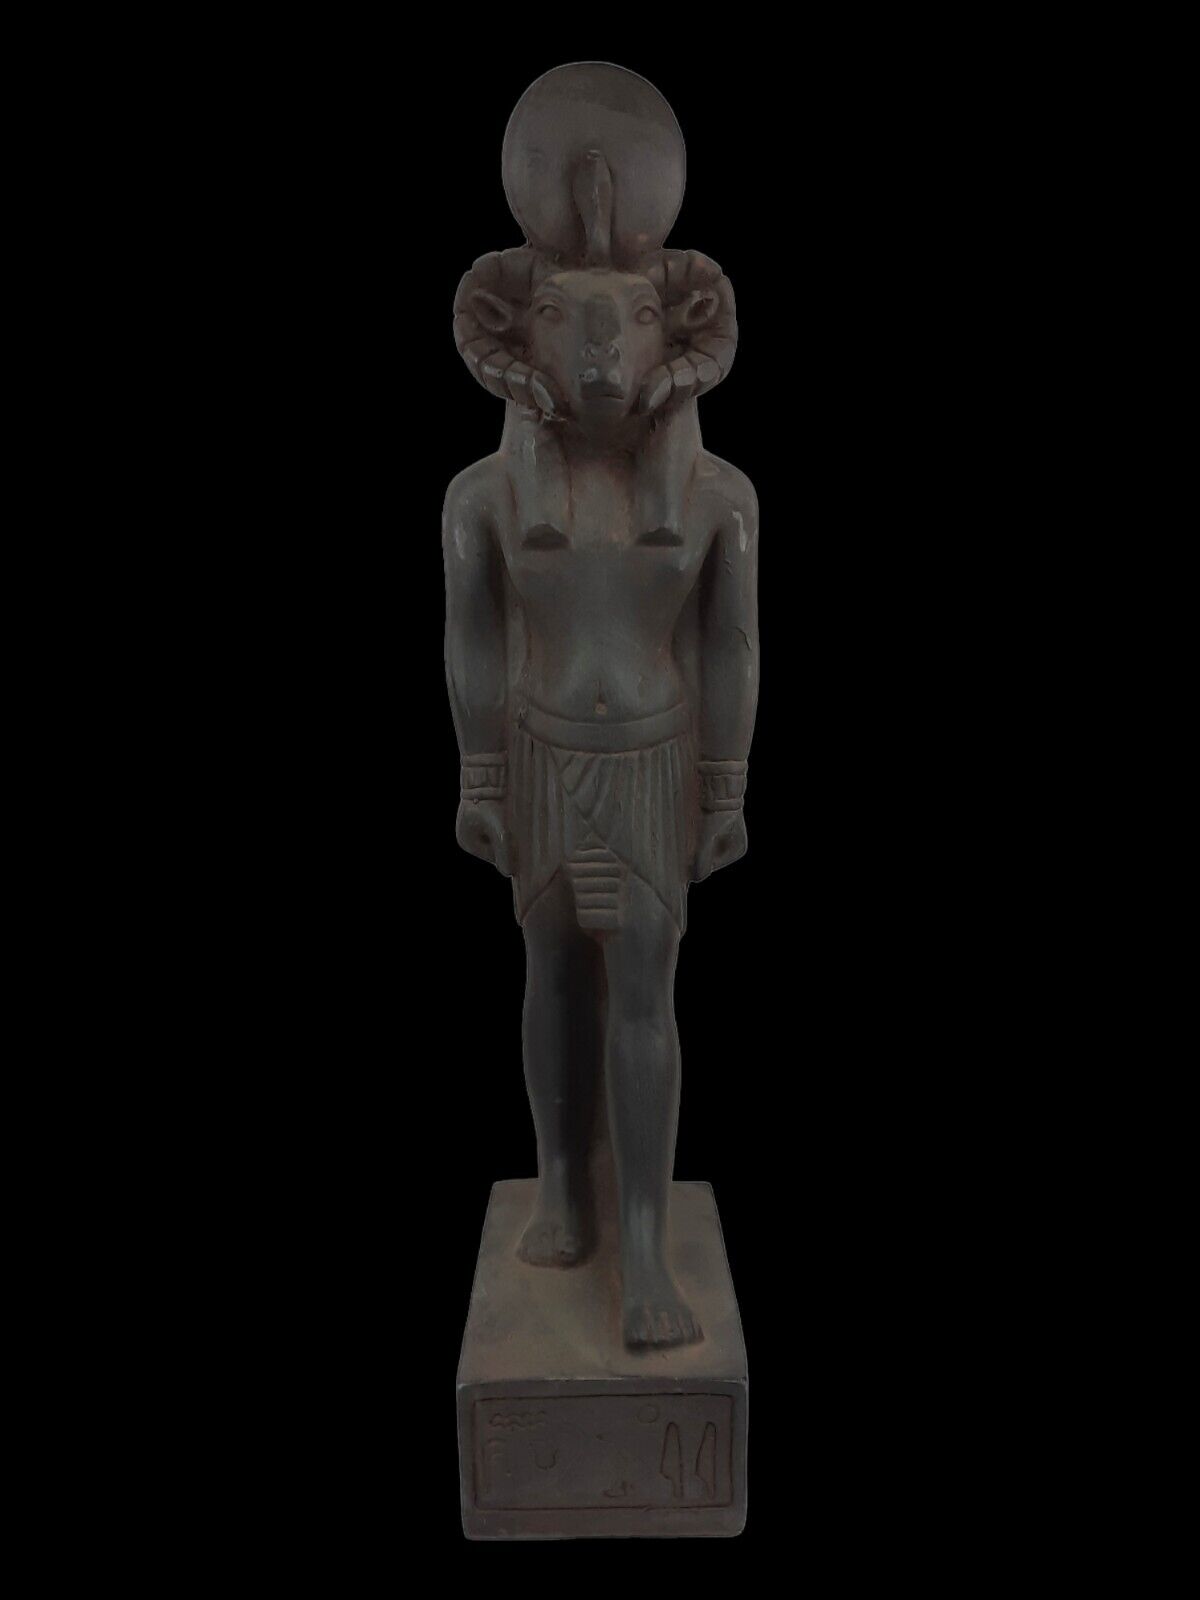 UNIQUE ANTIQUE ANCIENT EGYPTIAN Statue Heavy Stone God Khnum Magic Hieroglyphic